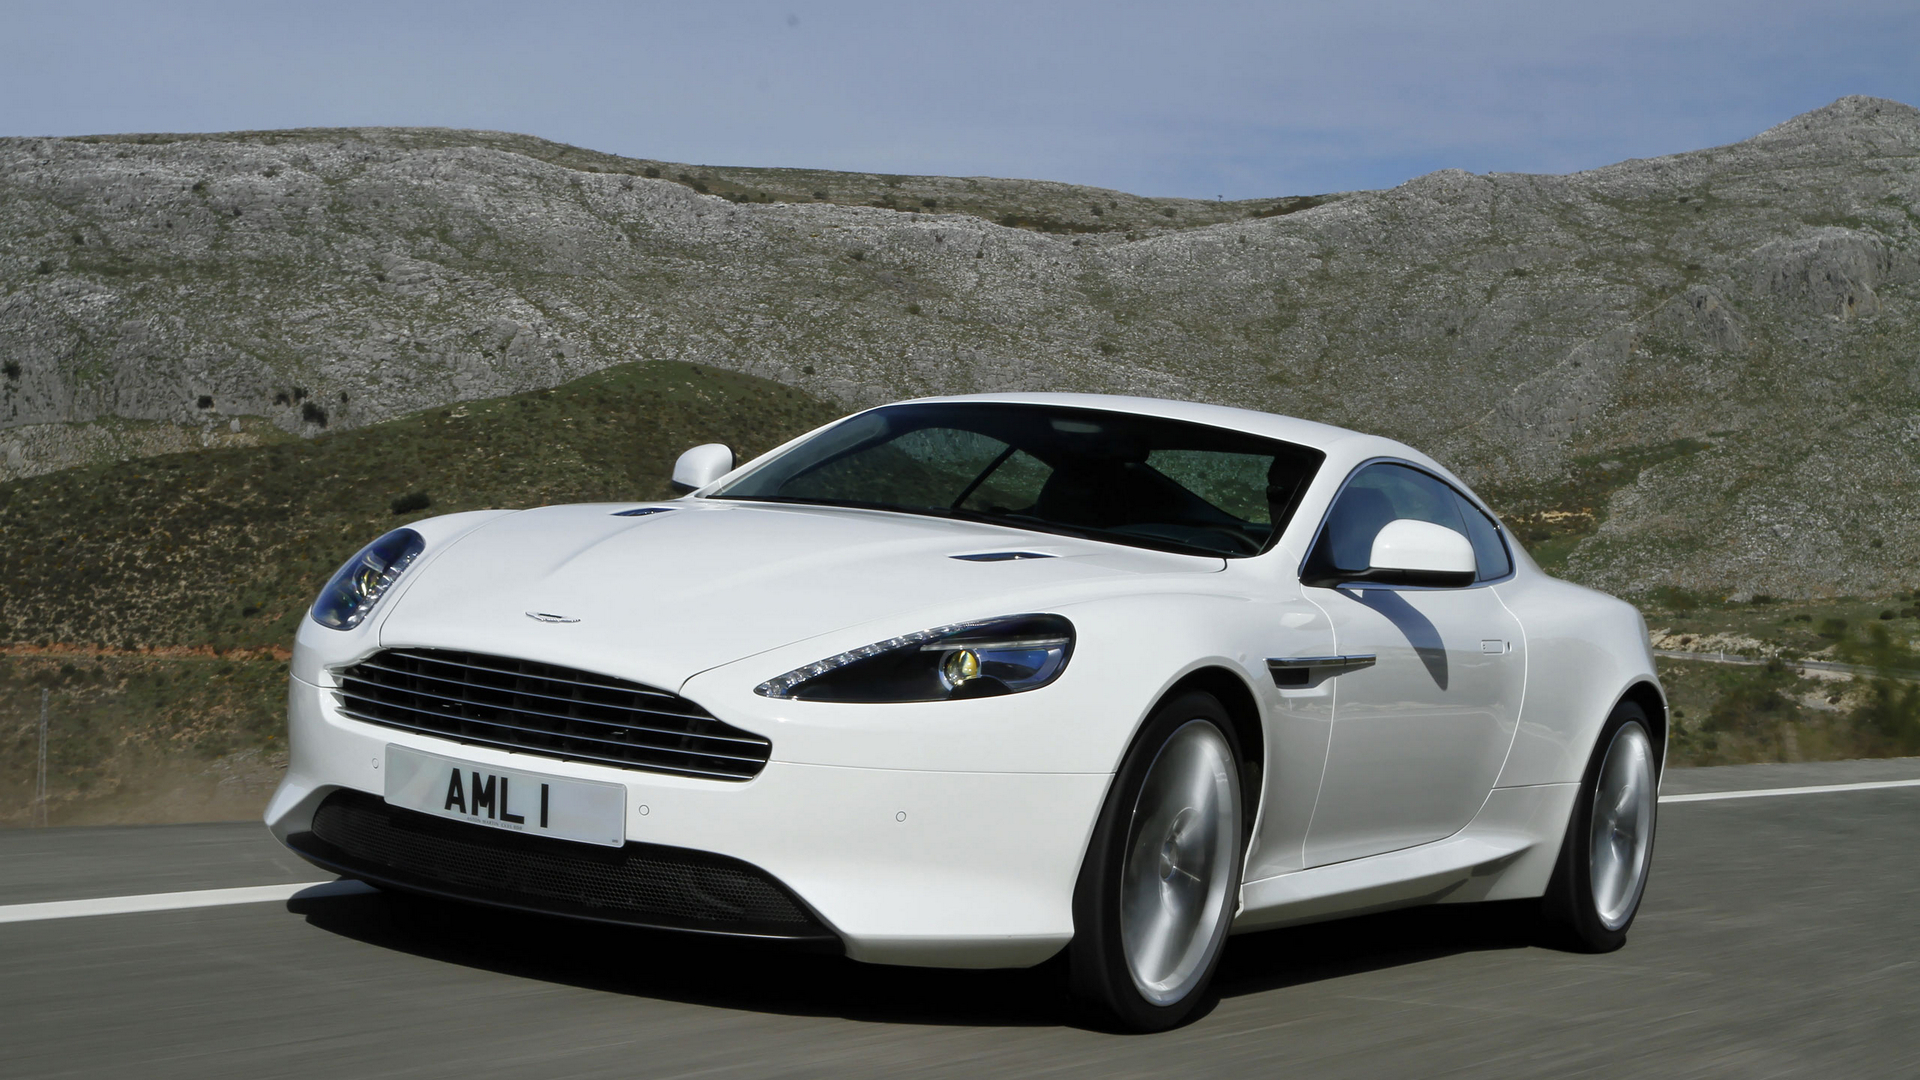 Картинка Астон мартин virage белая скорость Автомобили Aston Martin Белый белые белых едет едущий едущая Движение авто машины машина автомобиль